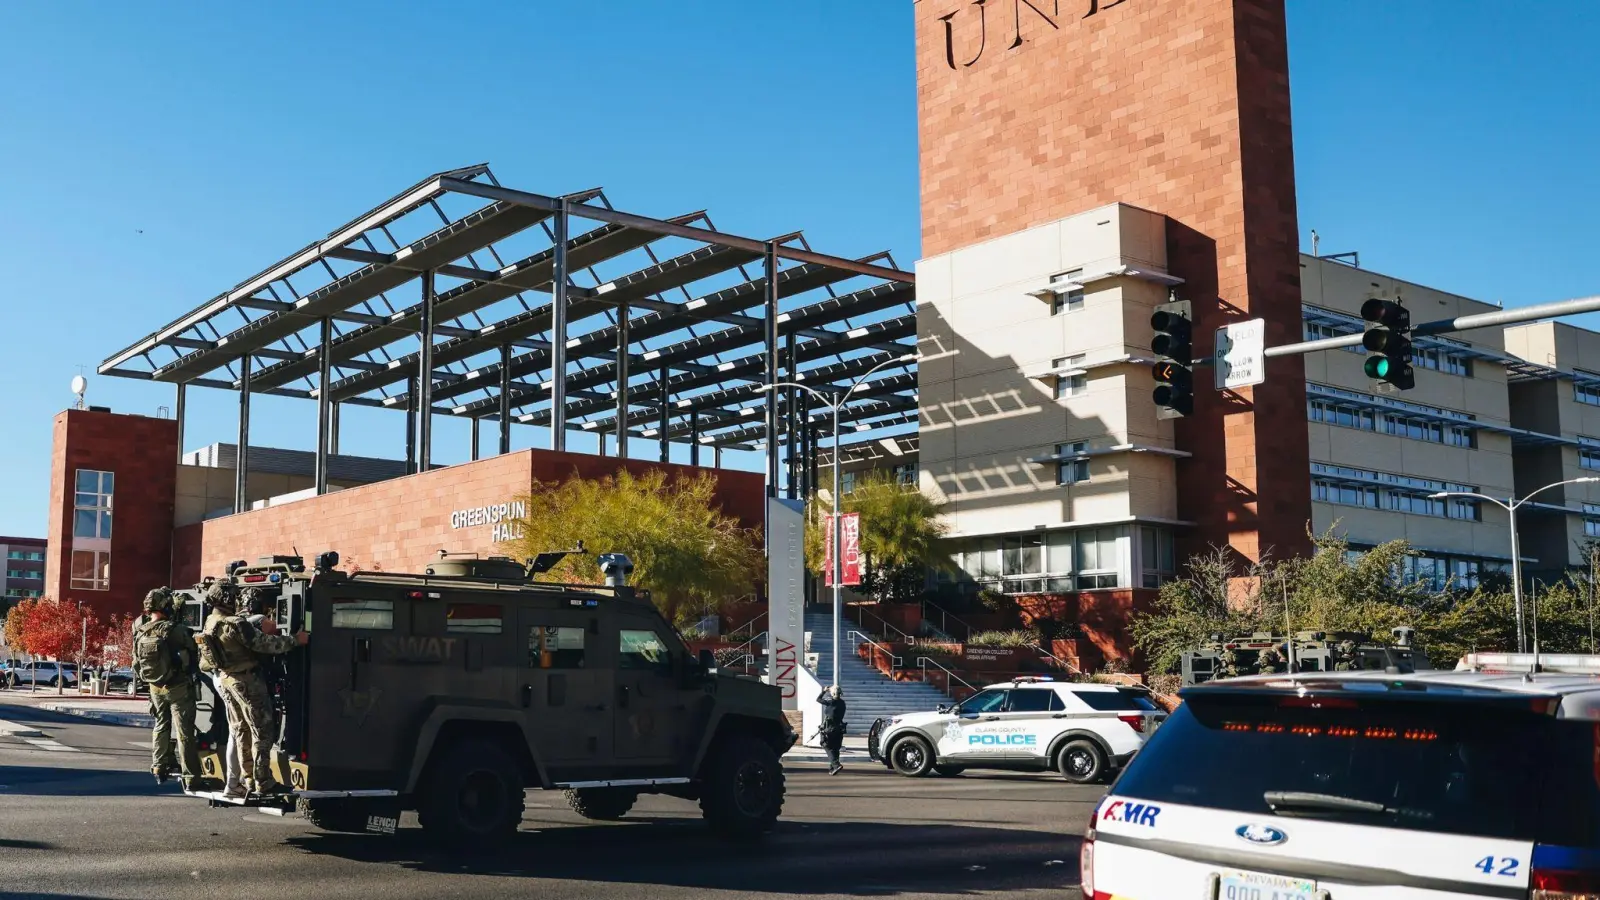 Bei einem Schusswaffenangriff an einer Universität in Las Vegas wurden drei Menschen getötet. (Foto: Madeline Carter/Las Vegas Review-Journal/AP/dpa)